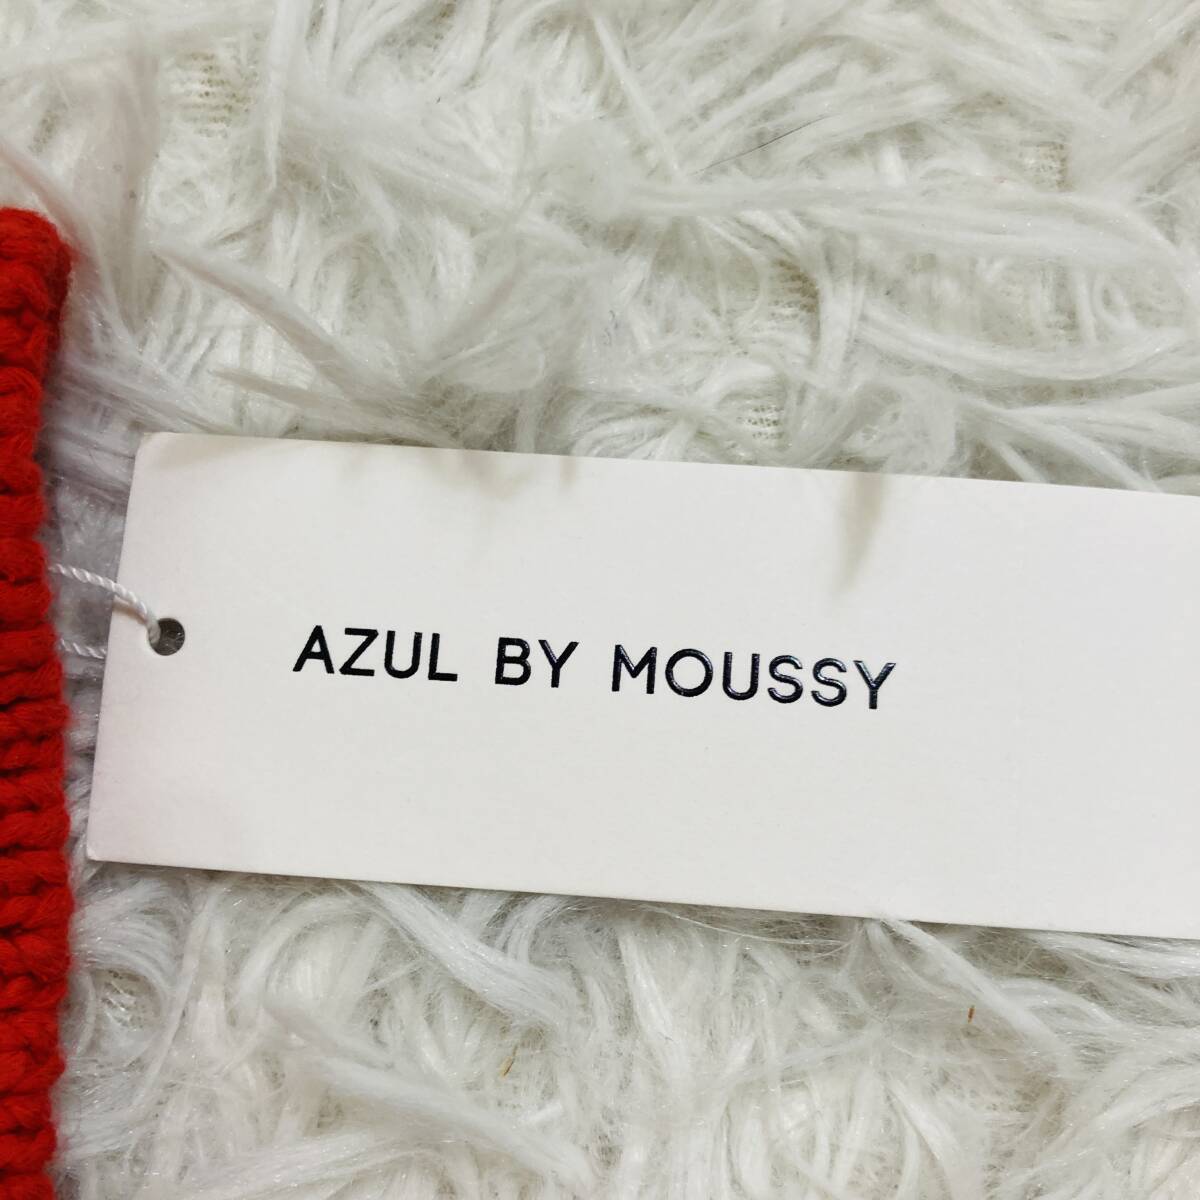 [257]AZUL BY MOUSSY azur bai Moussy вязаный бюстье красный с биркой не использовался M размер 